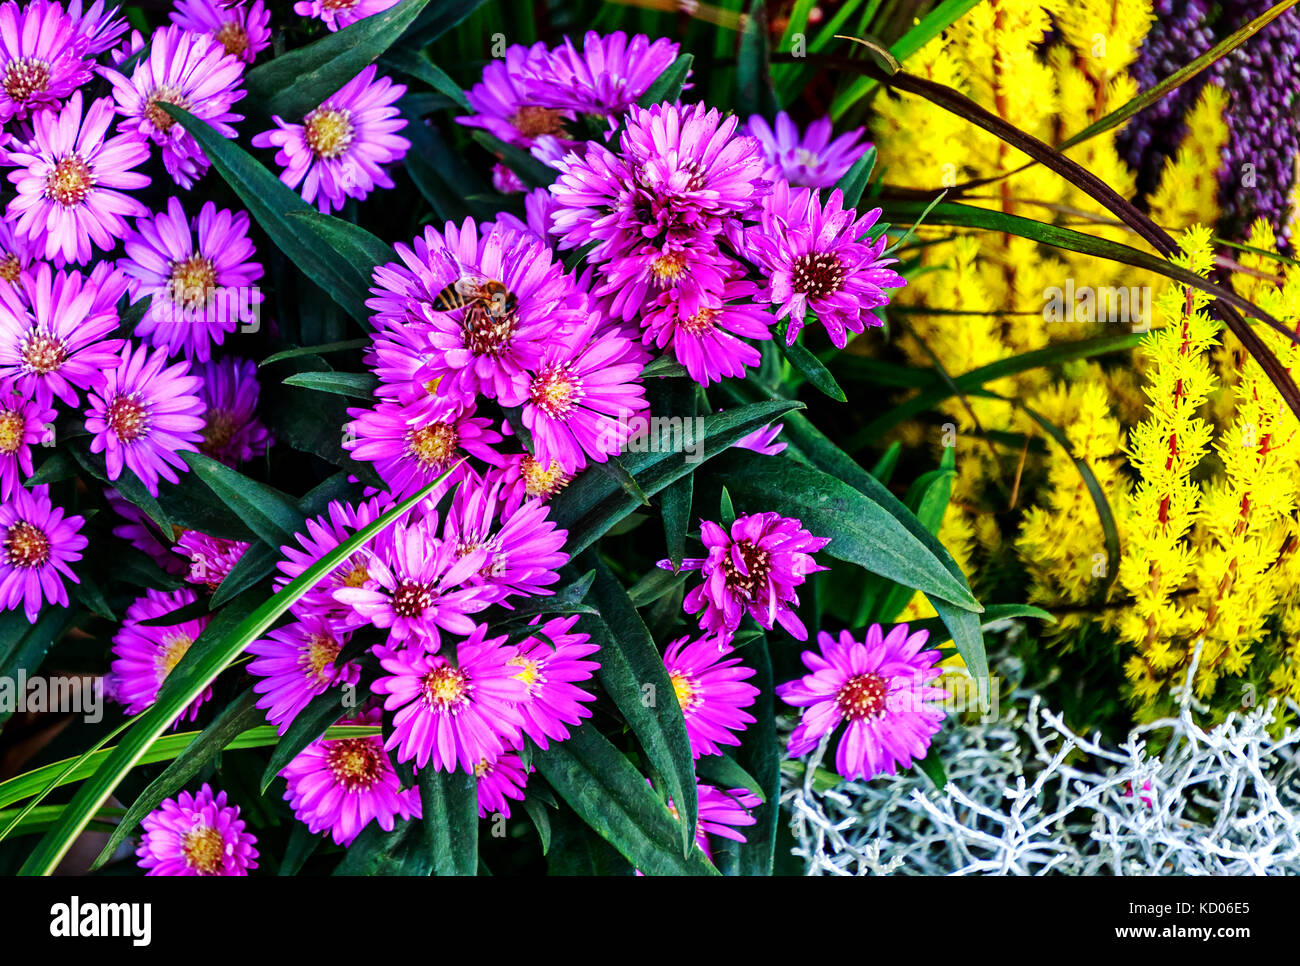 Purple fleurs daisy automnales (aster) et golden heather (Erica carnea) Banque D'Images